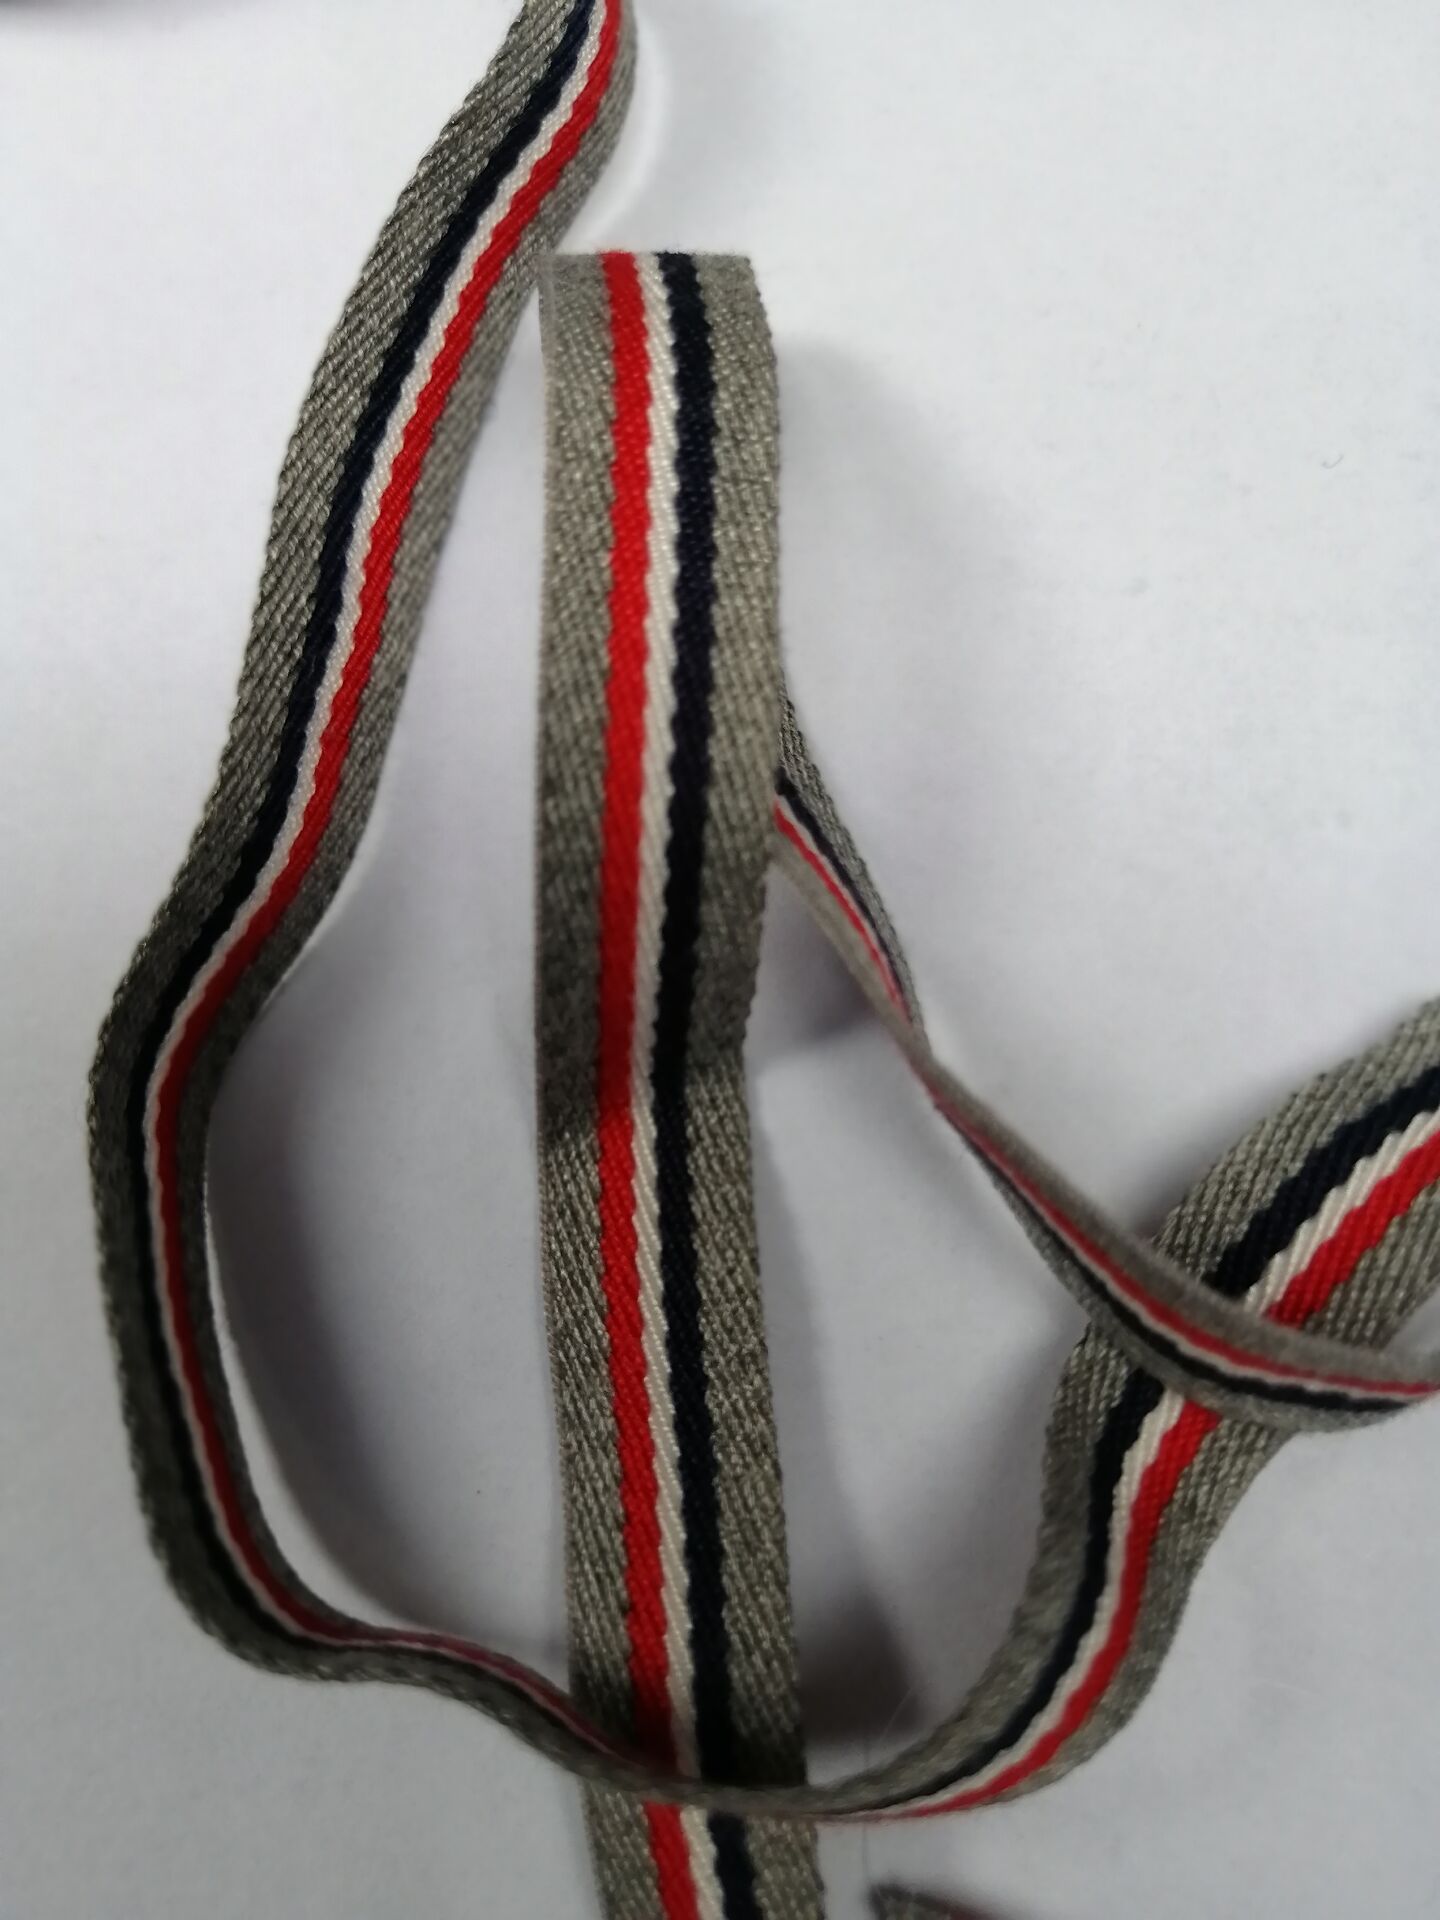 10mm 20mm 2 meter længde grå rød grosgrain bånd trykt stribe bånd diy håndlavede tøj tasker tilbehør materiale